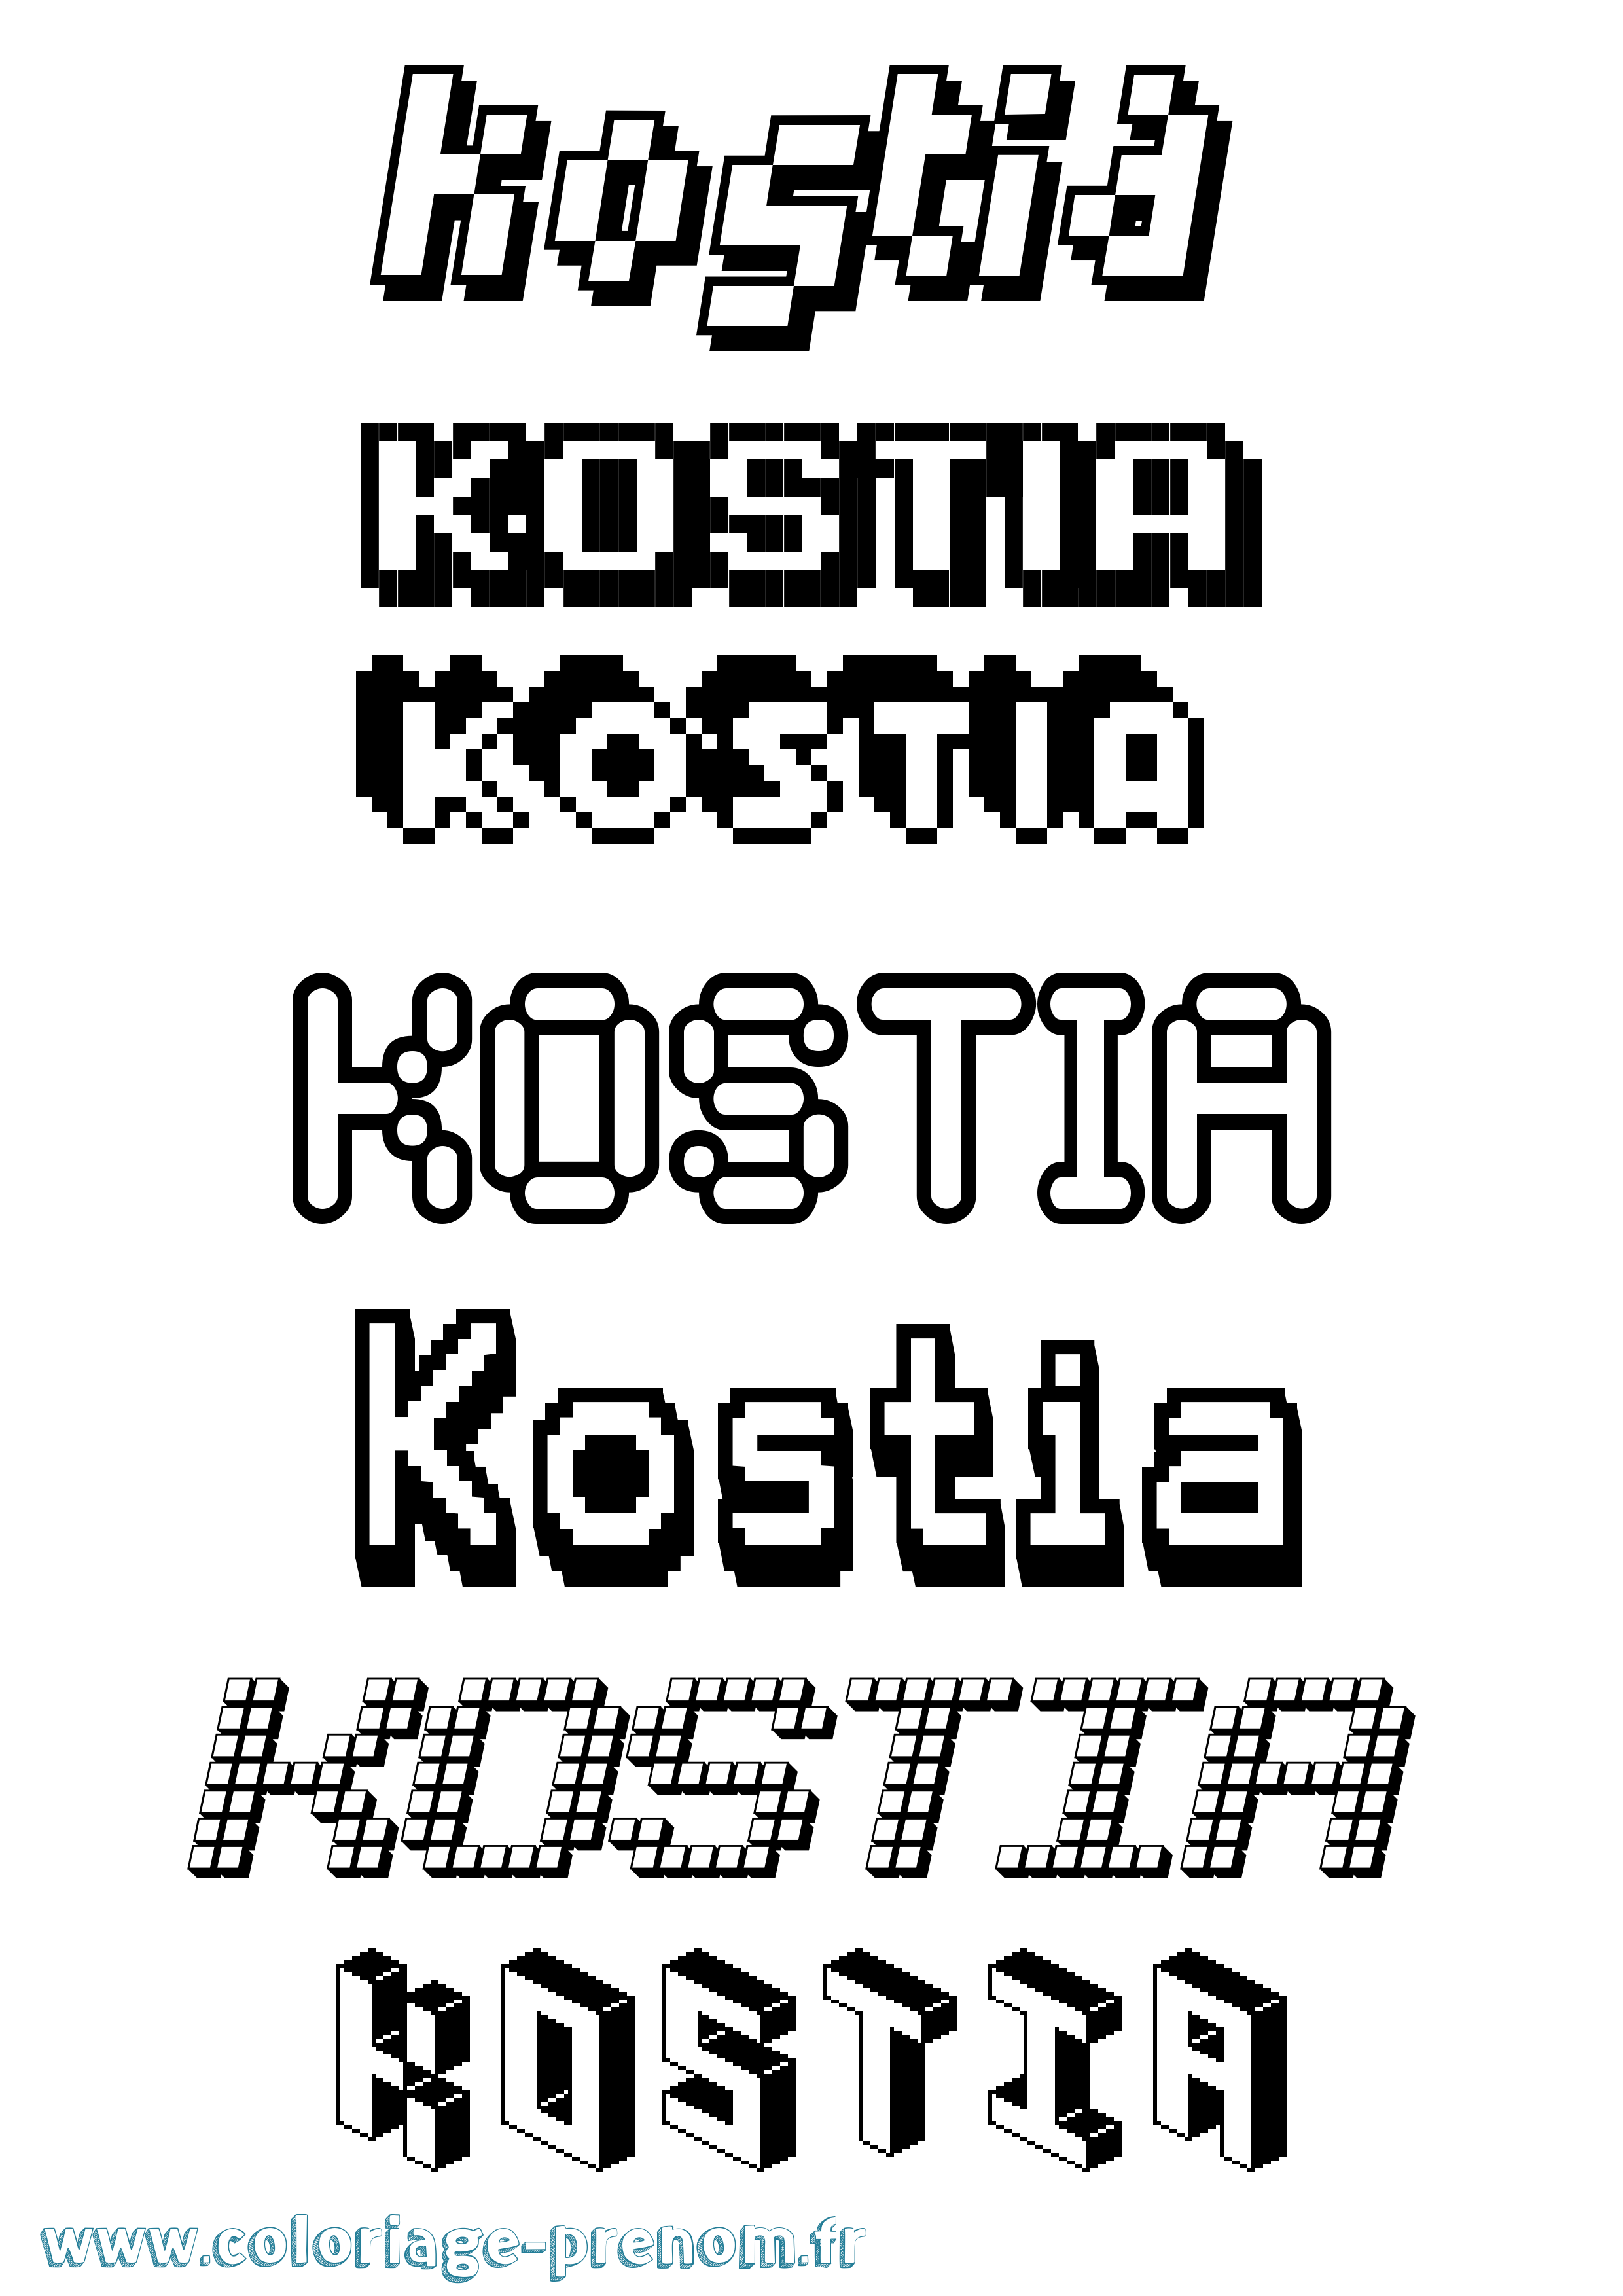 Coloriage prénom Kostia Pixel